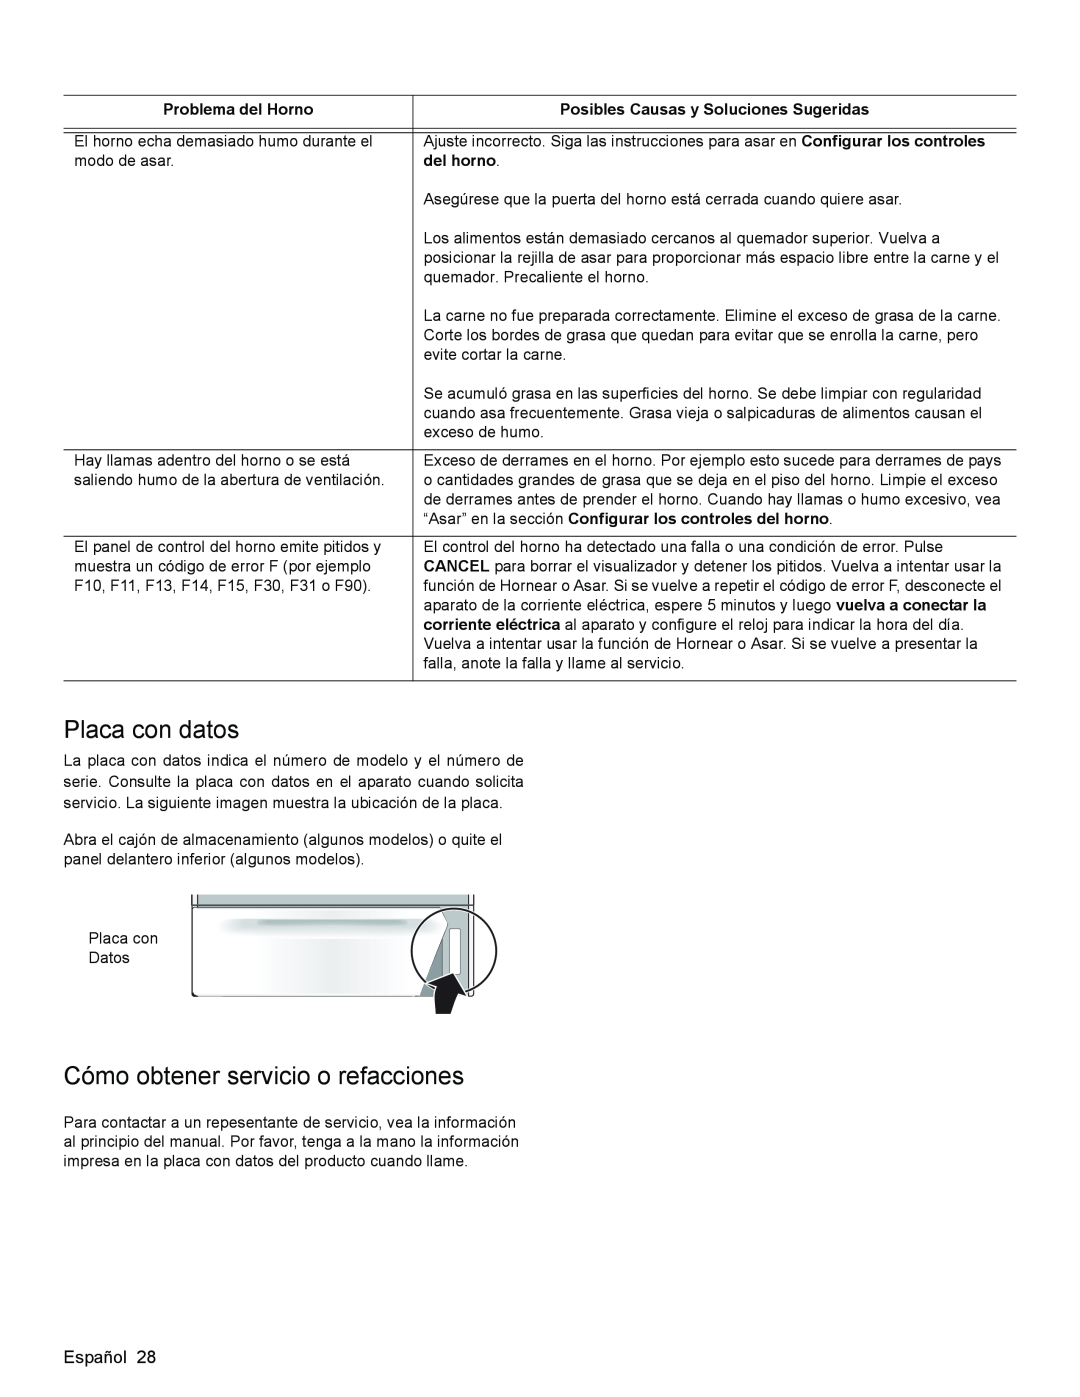 Bosch Appliances HGS3023UC manual Placa con datos, Cómo obtener servicio o refacciones, Problema del Horno, del horno 